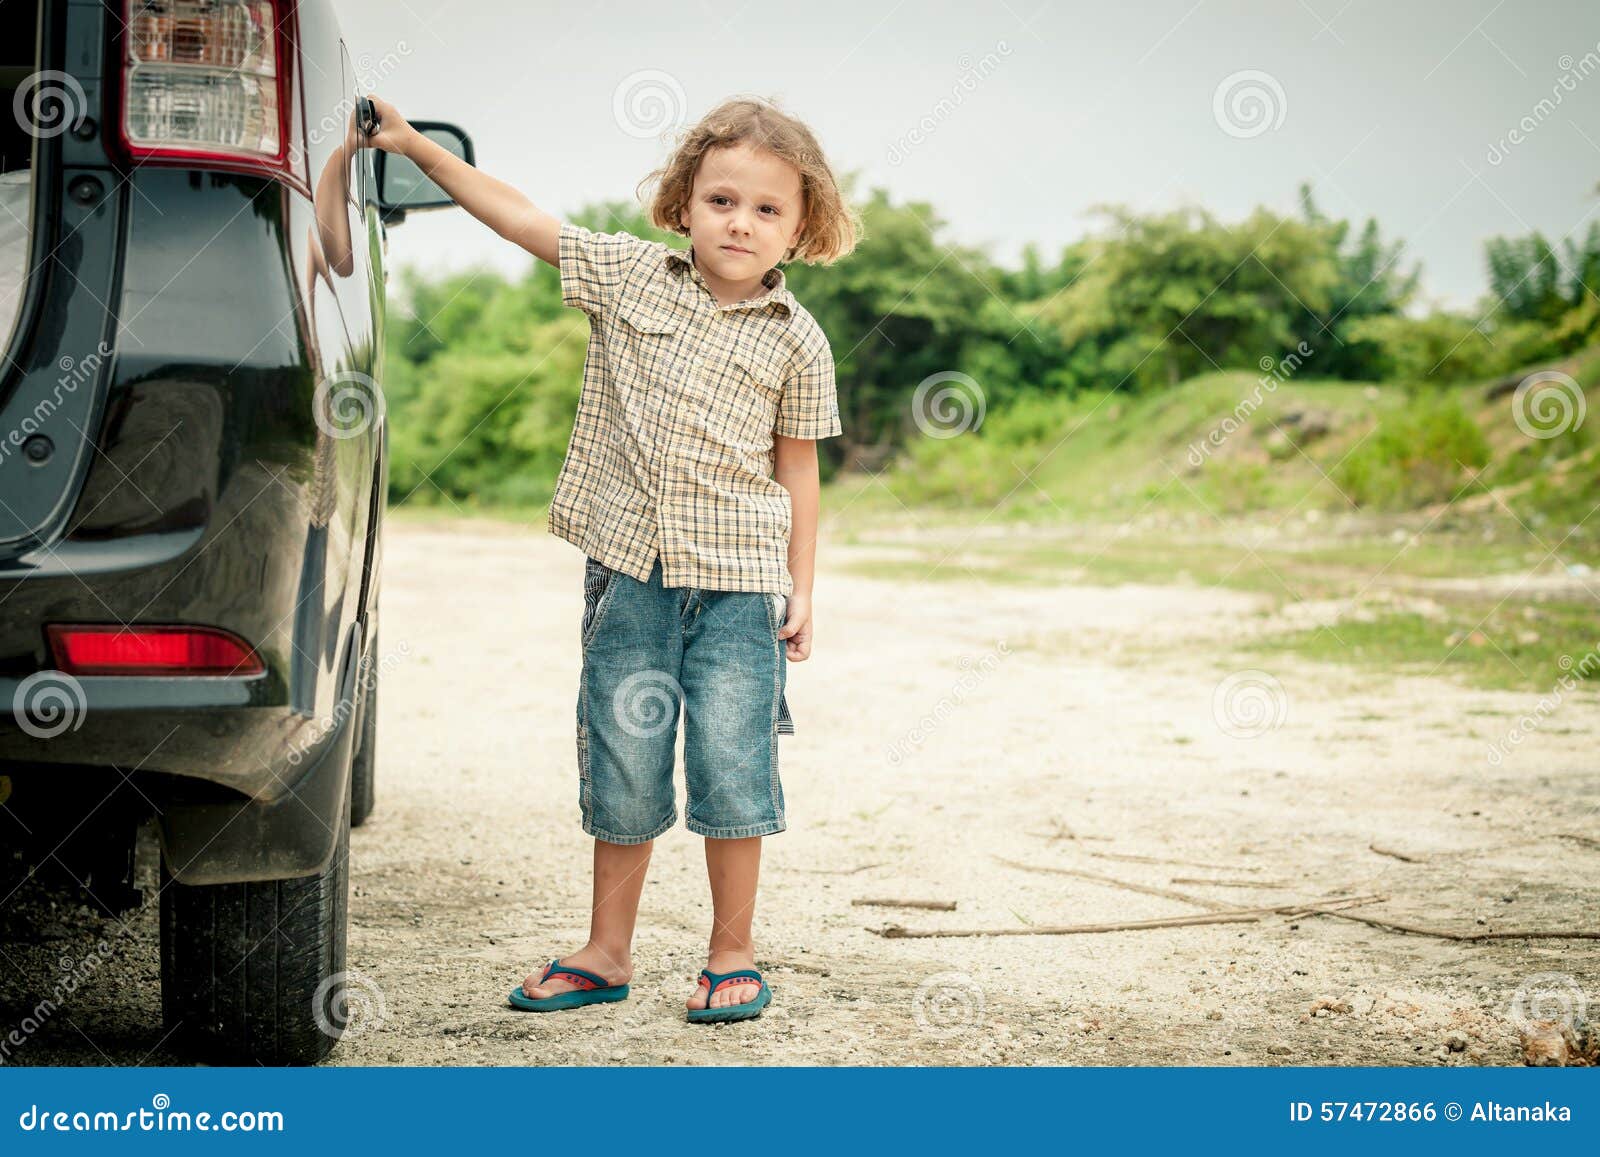 Песни мальчик на машине. Ребенок возле машины. Ребенок рядом с машиной. Маленький мальчик на фоне машины. Маленький мальчик стоит.